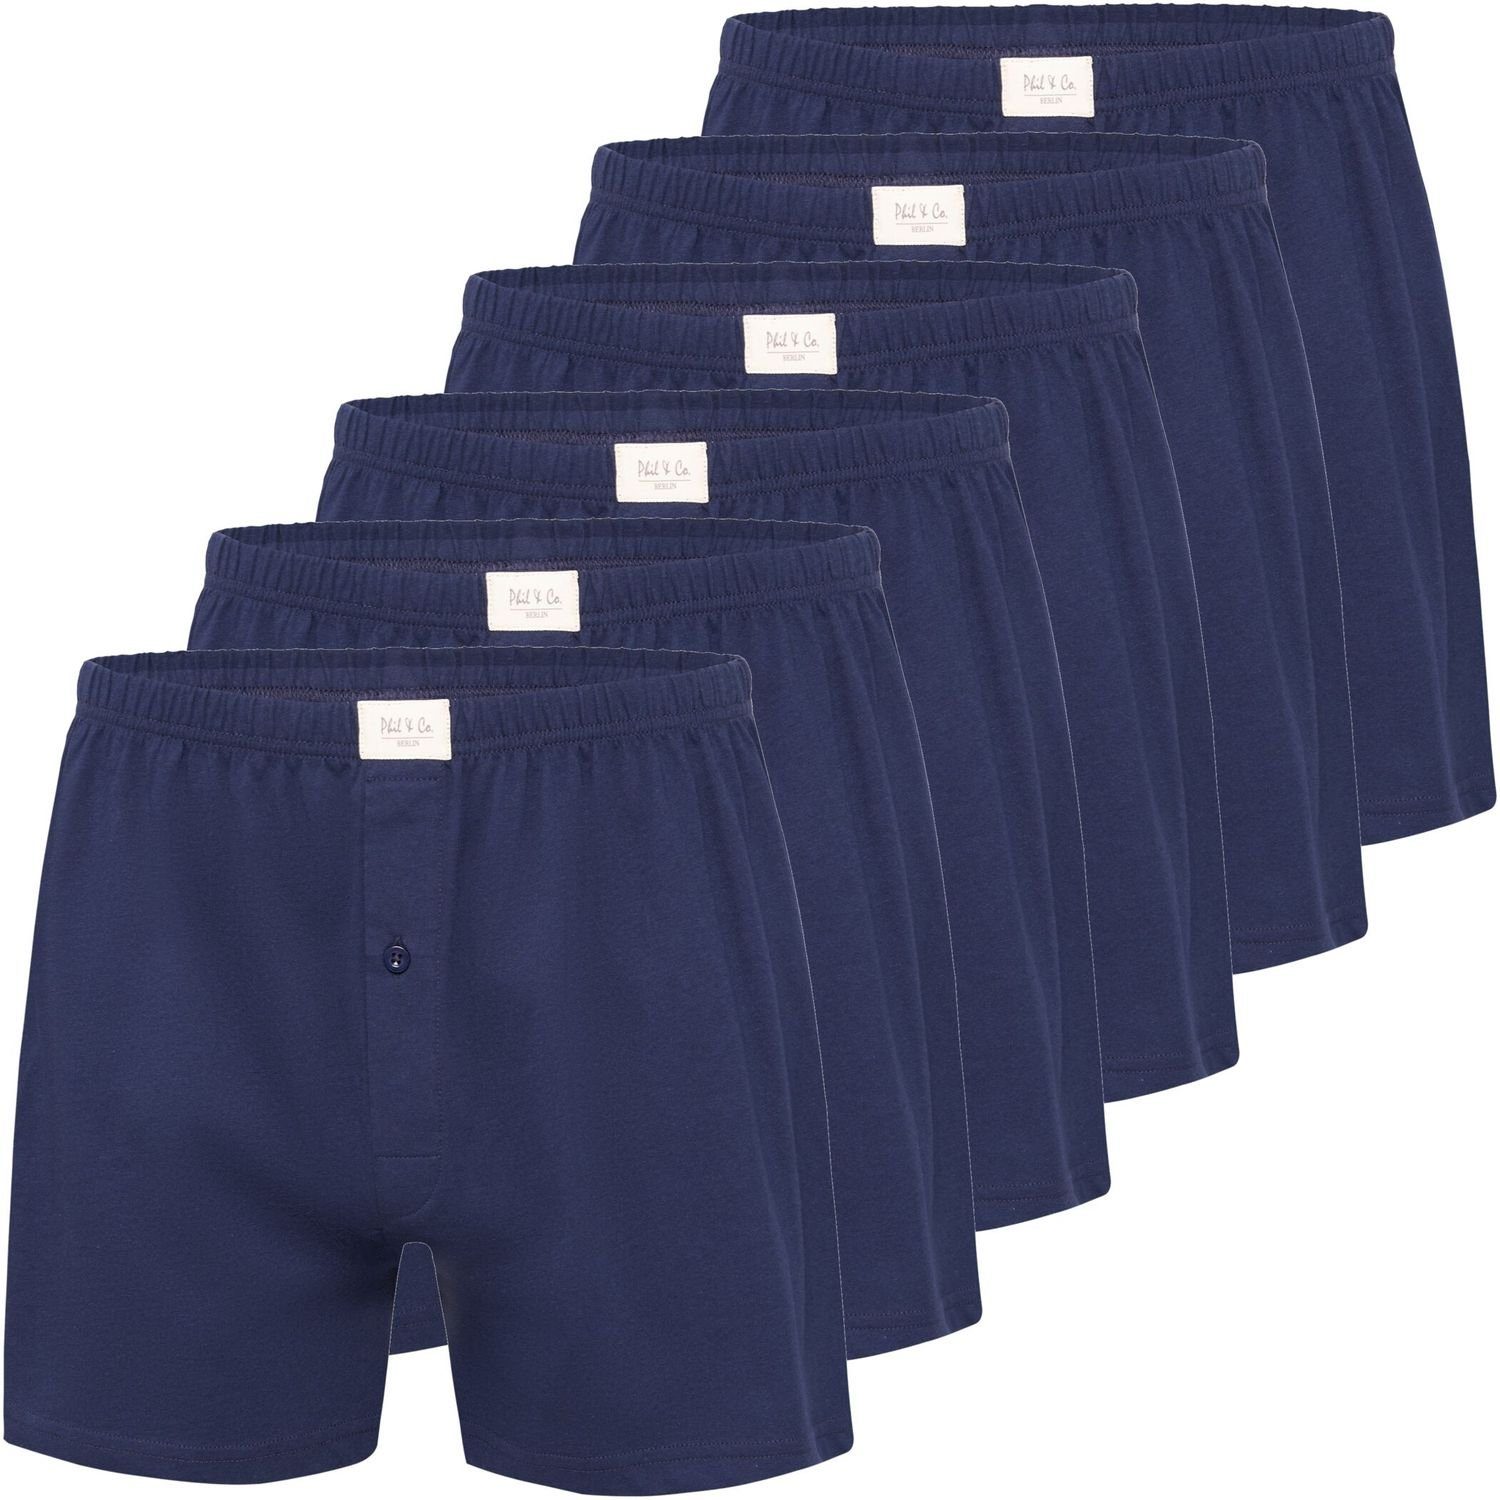 Phil & Co. Boxershorts 6, 9 oder 12 Stück Phil & Co Herren Jersey Shorts Pants große Größen (6-St) marine